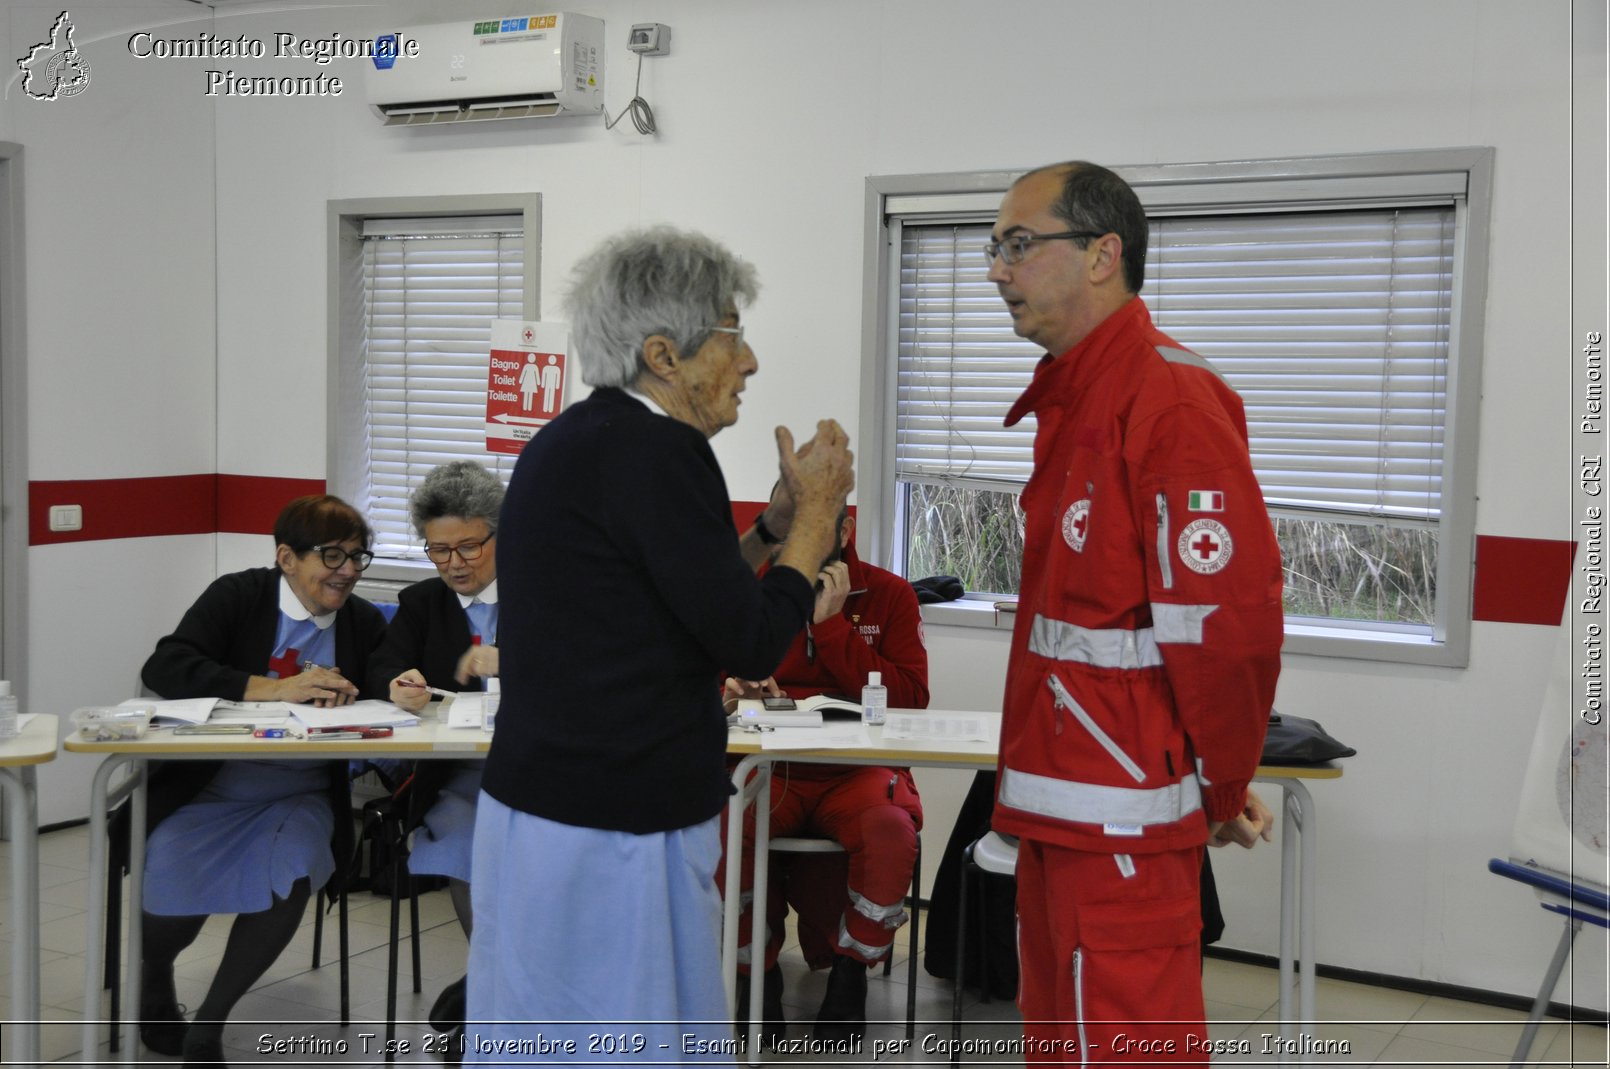 Settimo T.se 23 Novembre 2019 - Esami Nazionali per Capomonitore - Croce Rossa Italiana